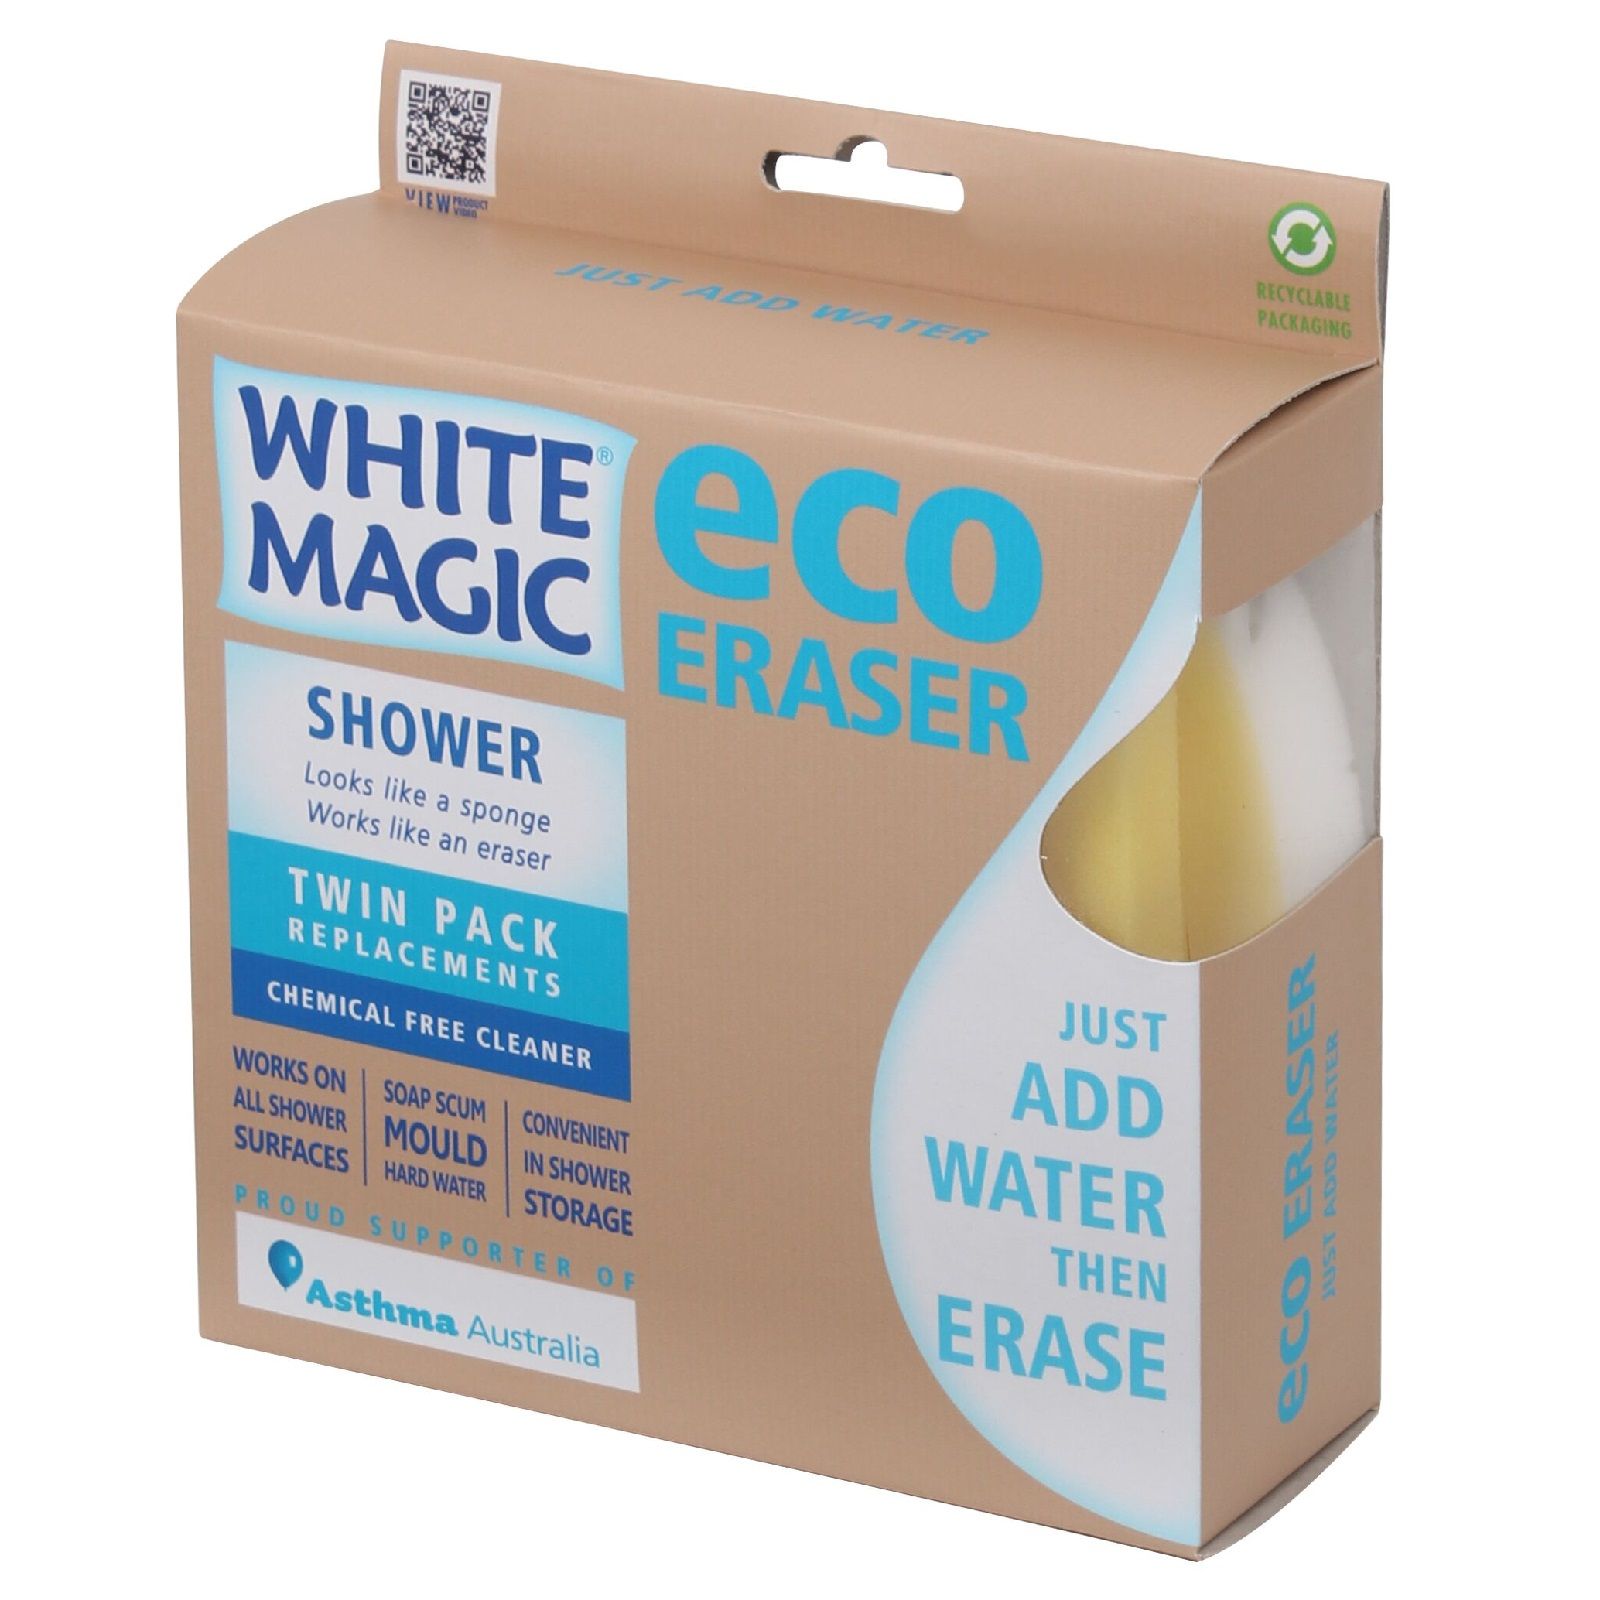 White Magic Eco Eraser Shower Sponge Refill Pack